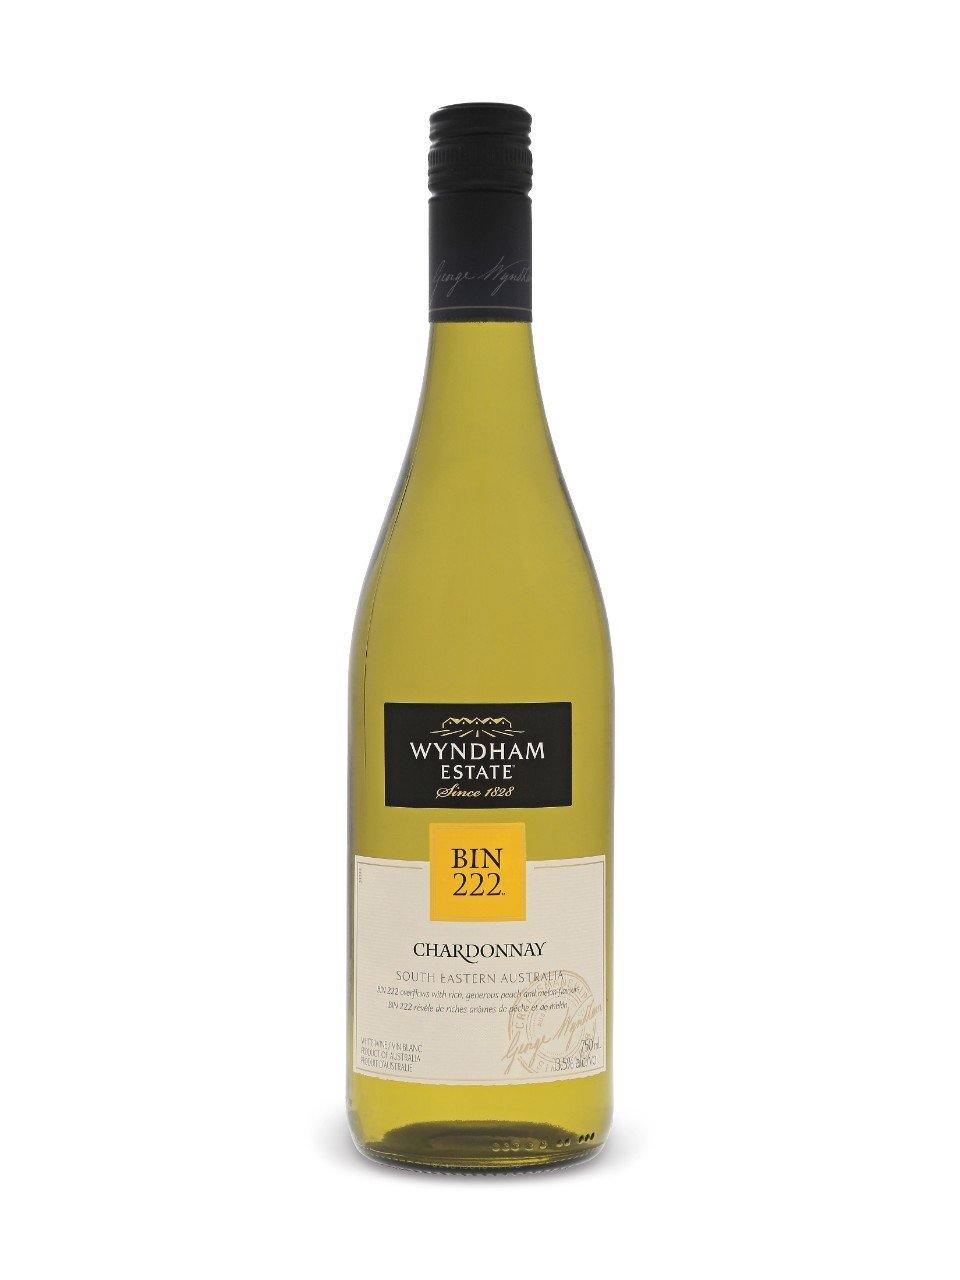 Wyndham Estate Bin 222 Chardonnay 750 mL bottle - Speedy Booze